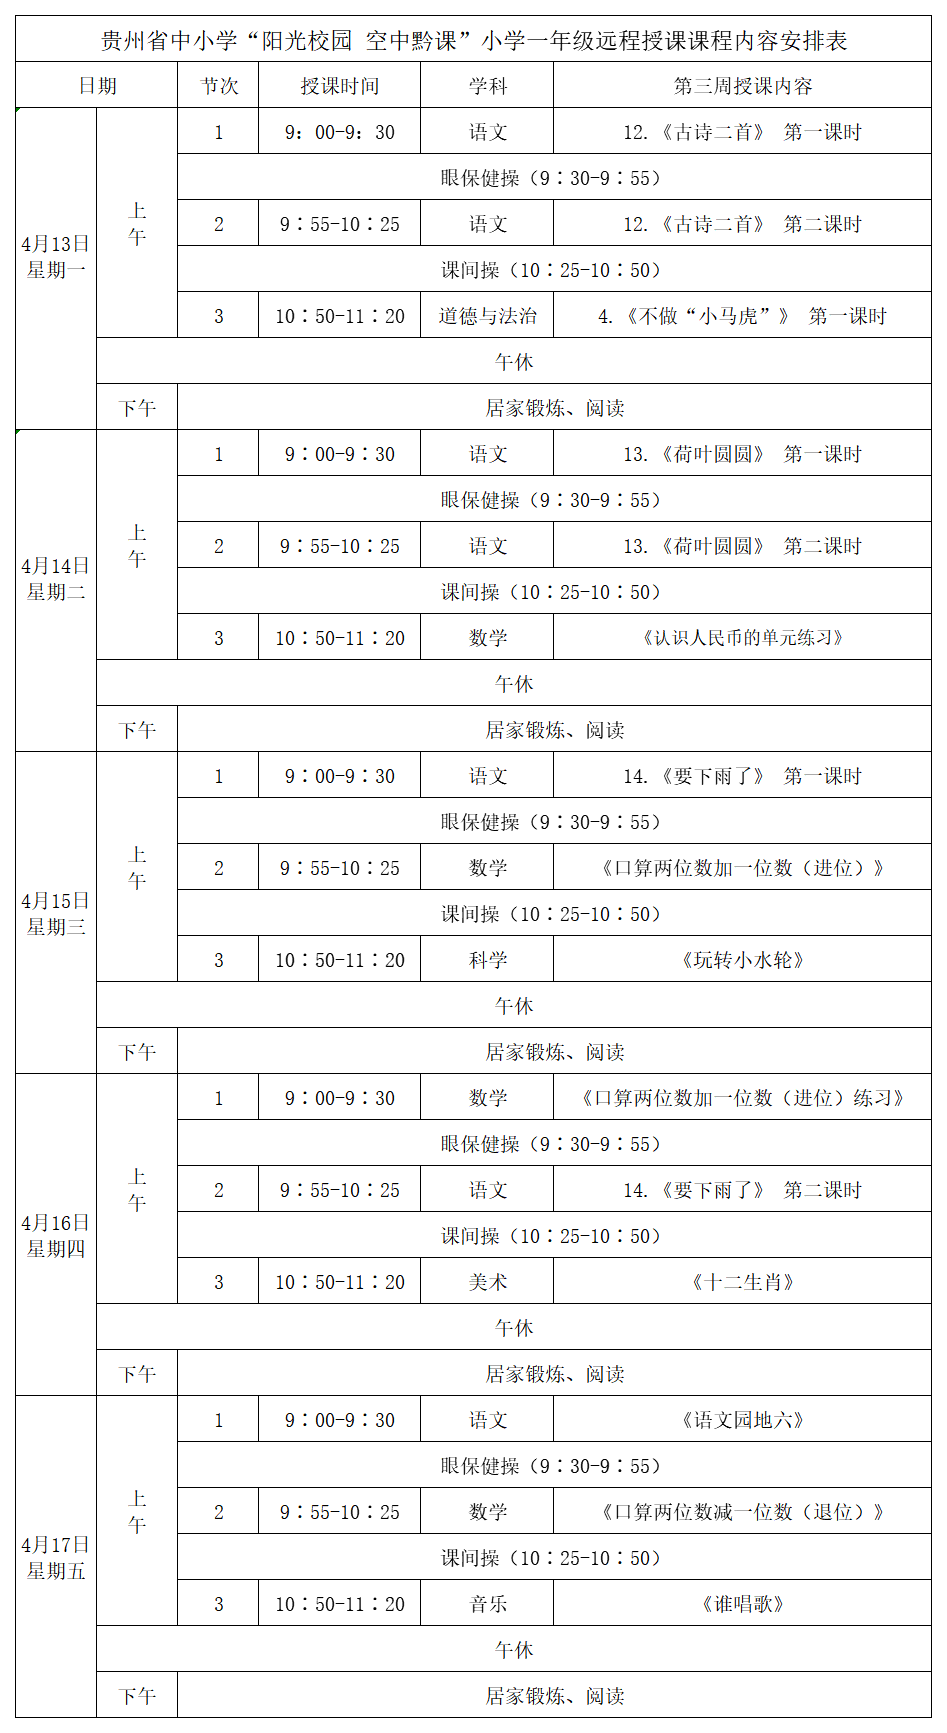 贵州中小学“空中课堂”课程表完整版公布（4月13日14